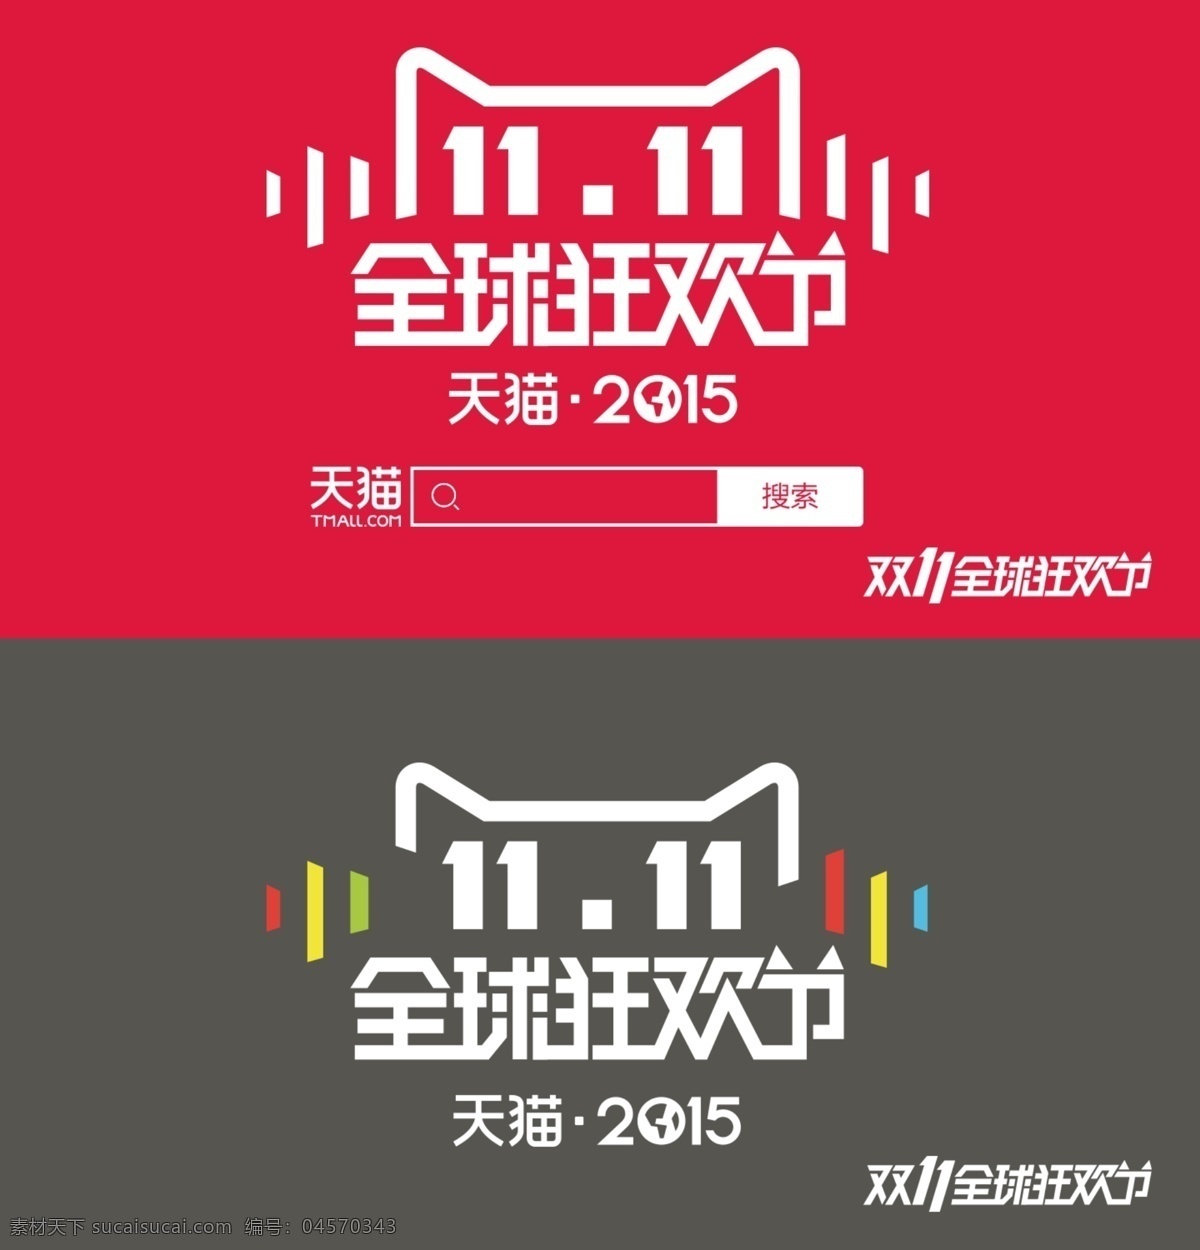 2015 天猫 双十 logo 双 猫淘宝双11 红色